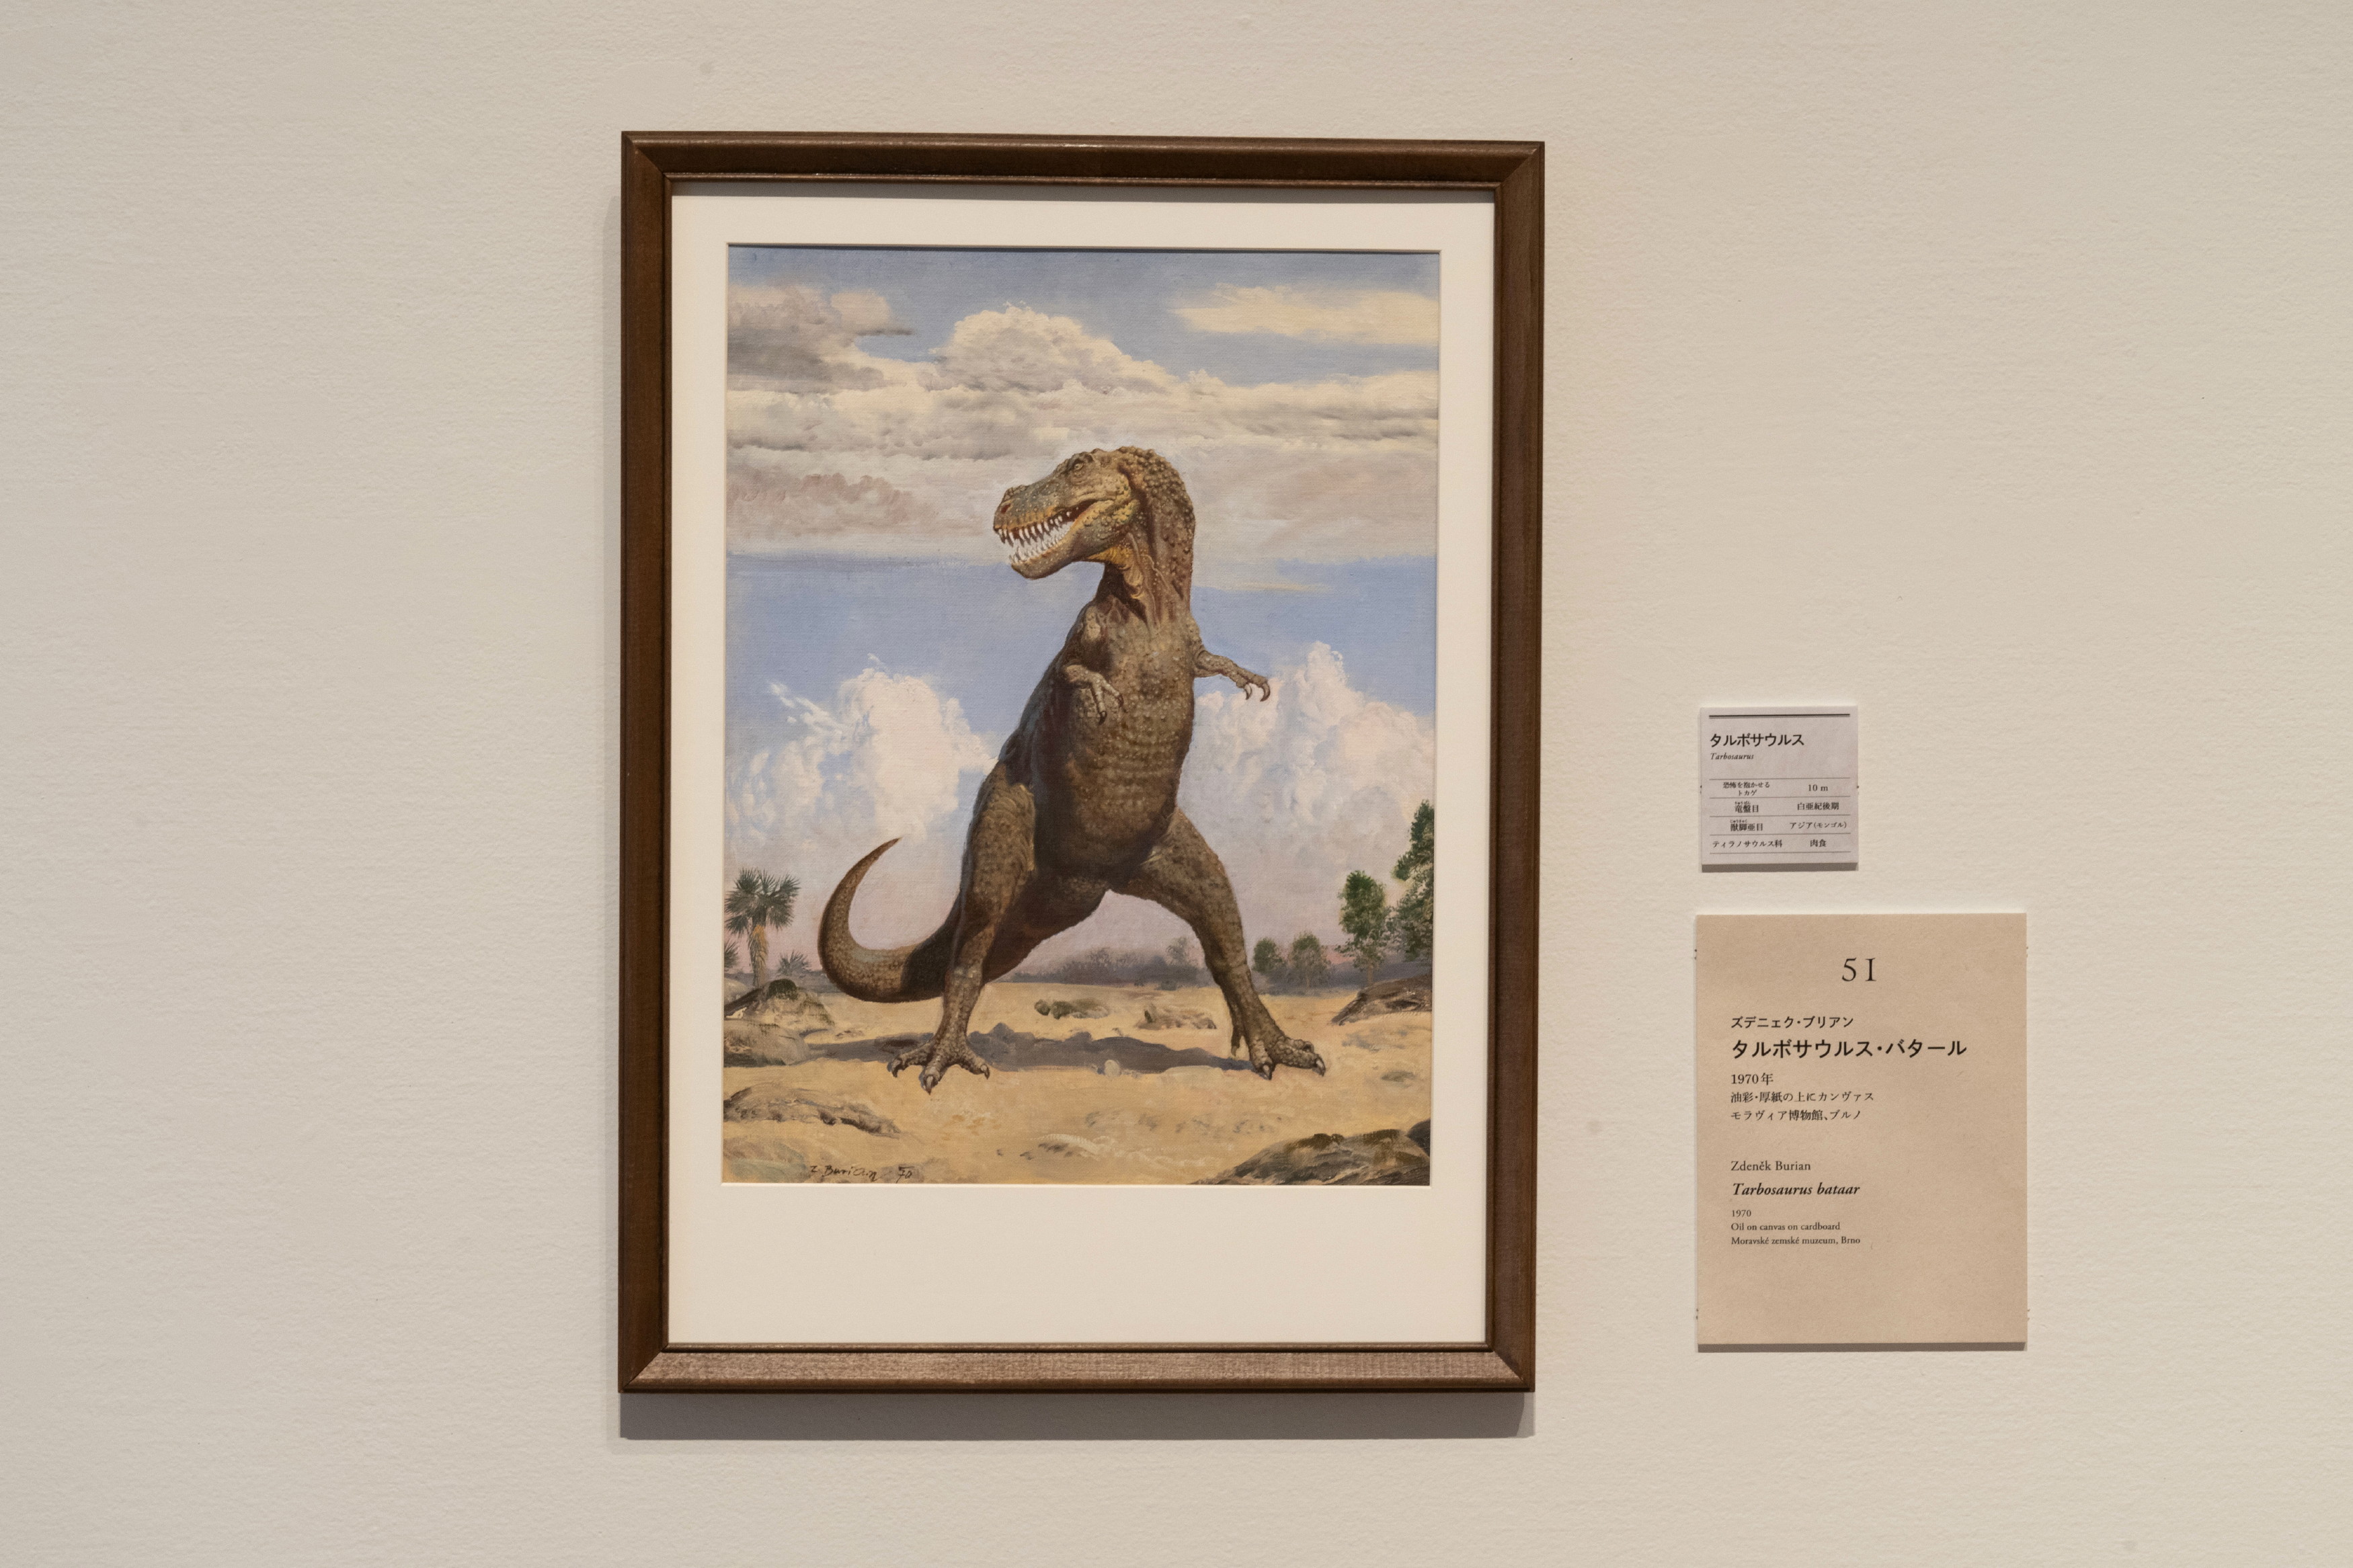 Z・ブリアン「タルボサウルス・バタール」1970年  モラヴィア博物館、ブルノ